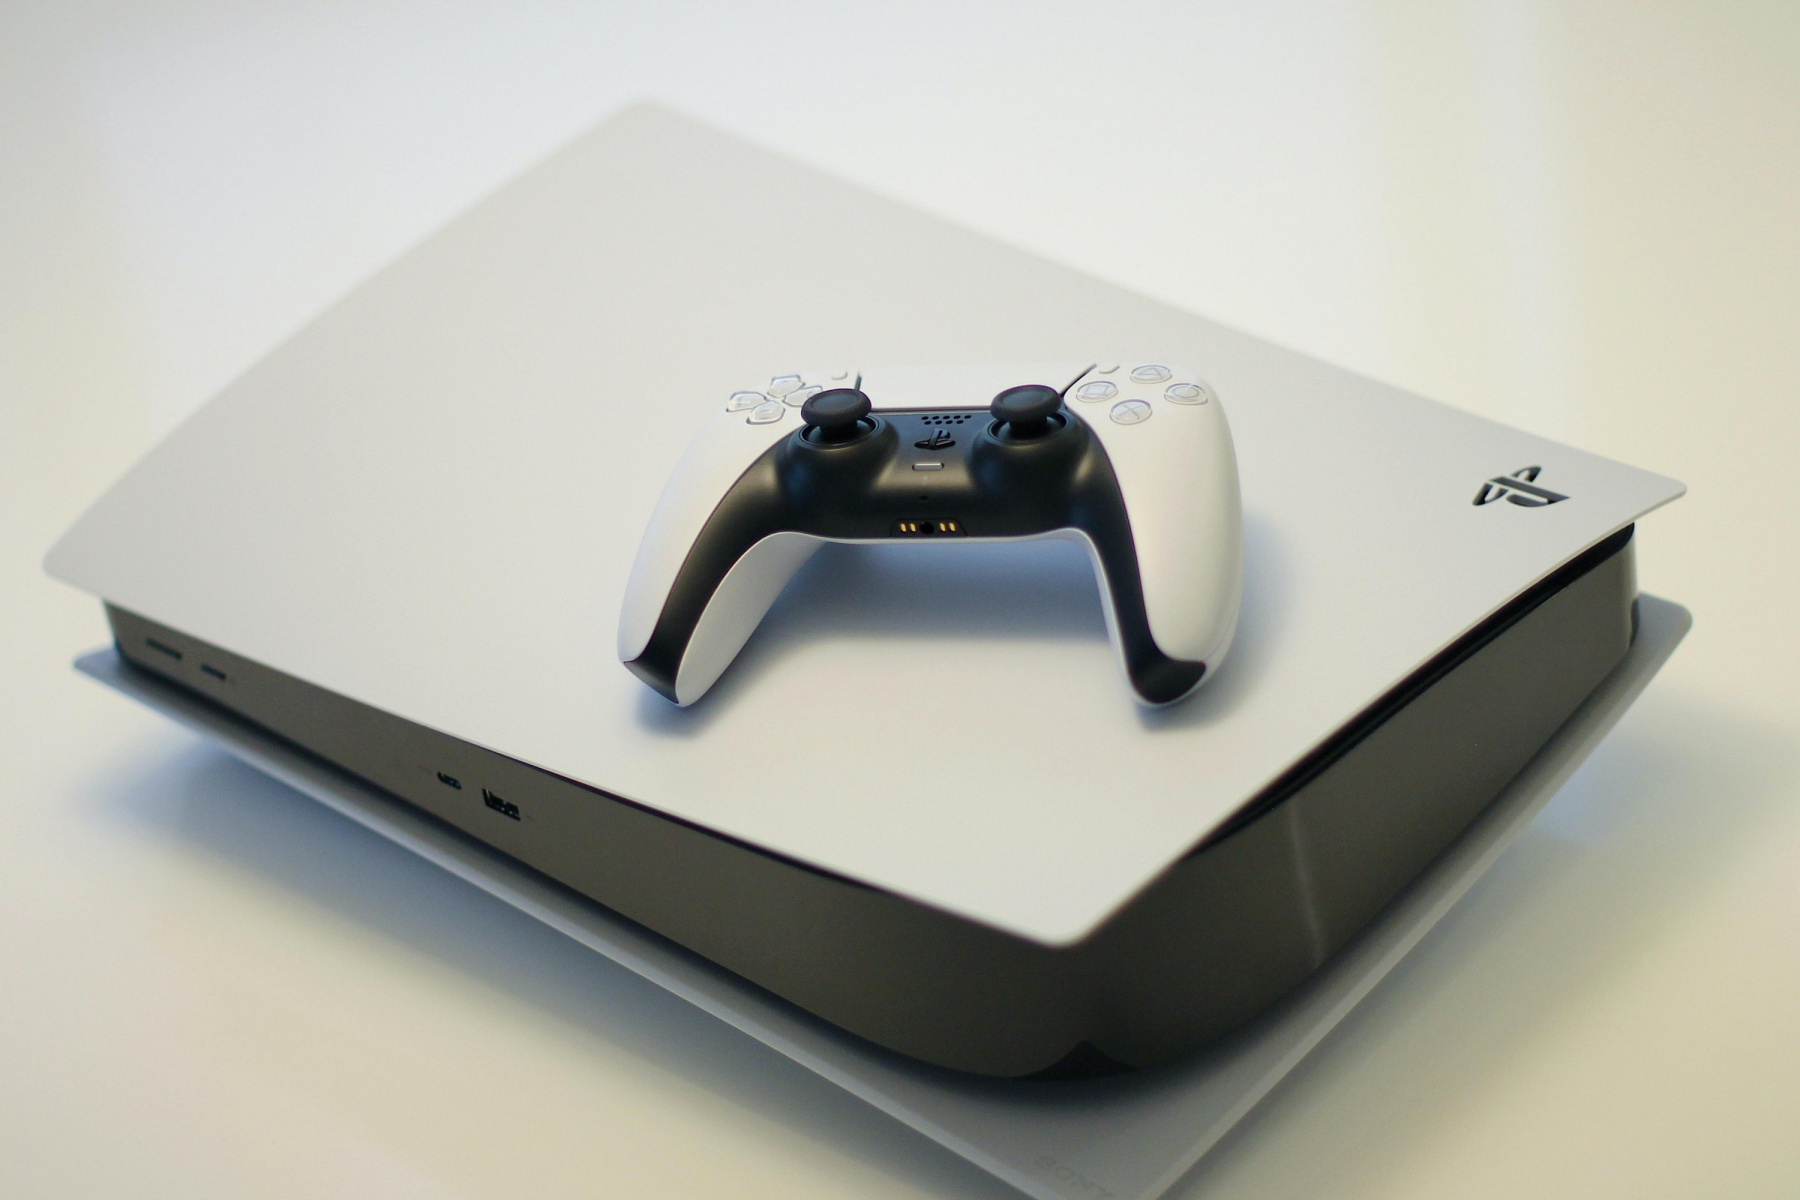 PlayStation Plus anuncia seus jogos grátis de PS4 e PS5 para